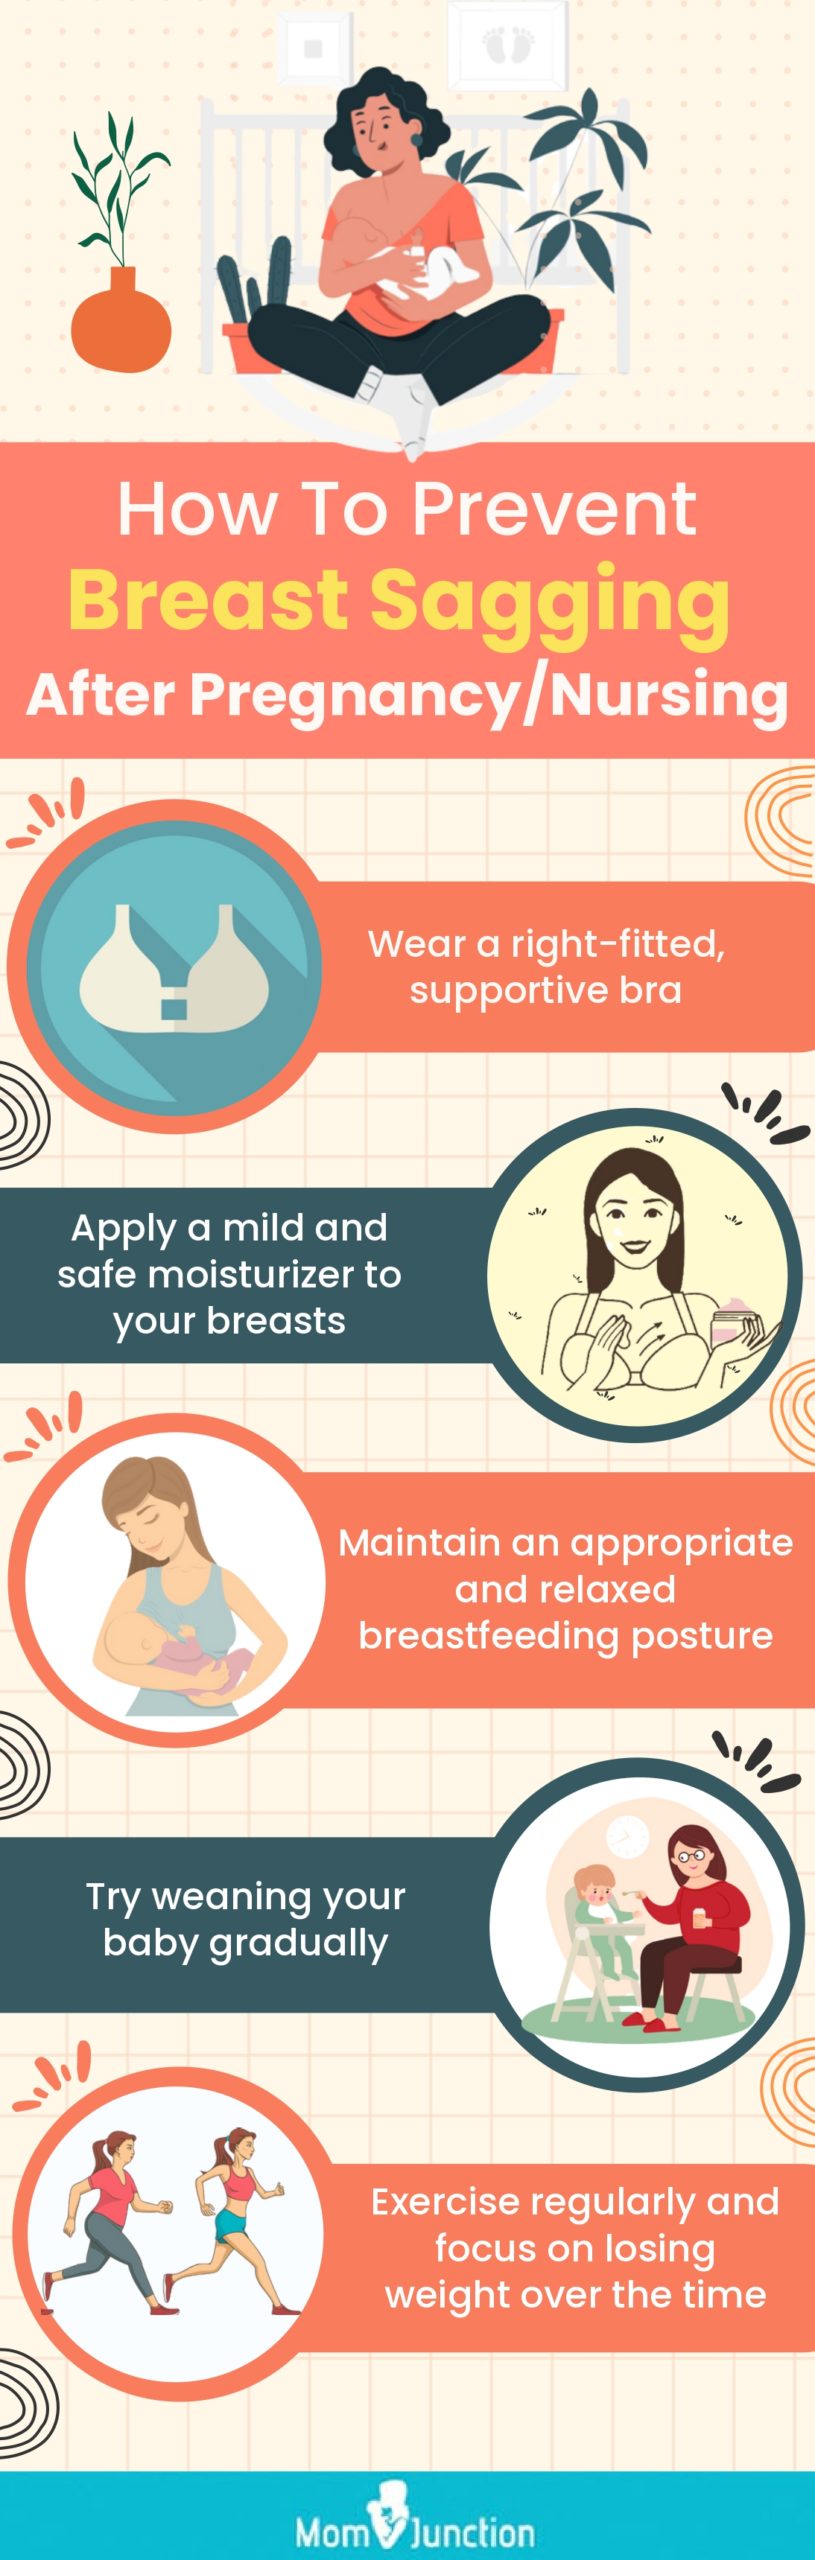 https://www.momjunction.com/wp-content/uploads/2015/01/How-To-Prevent-Breast-Sagging-After-Pregnancy_Nursing-scaled.jpg